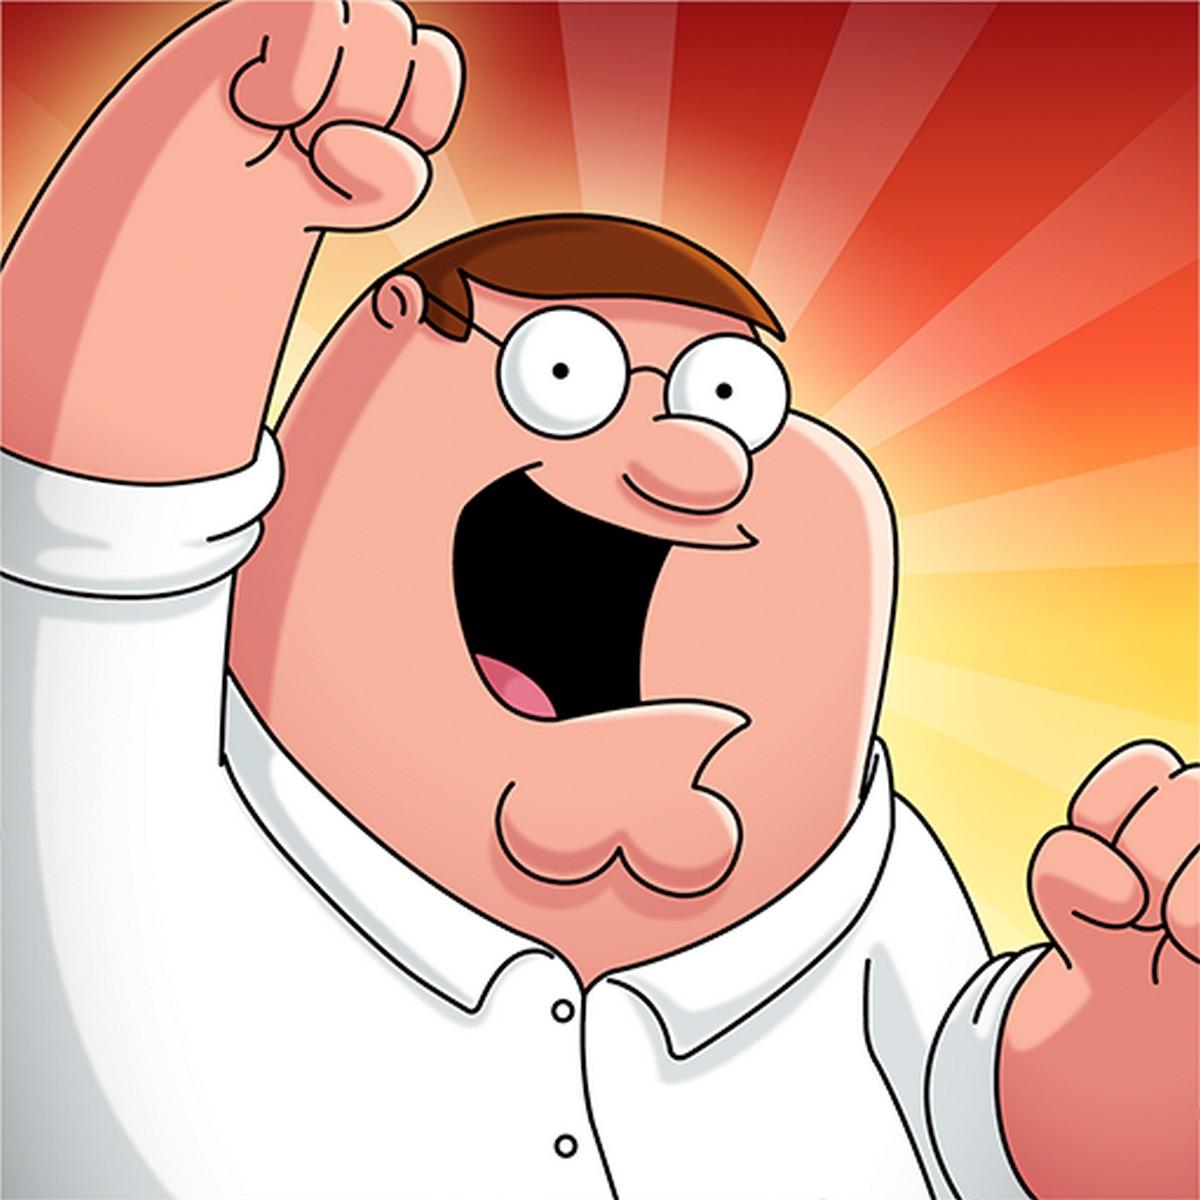 Family Guy The Quest for Stuff APK MOD v3.5.2 (Todo gratis)